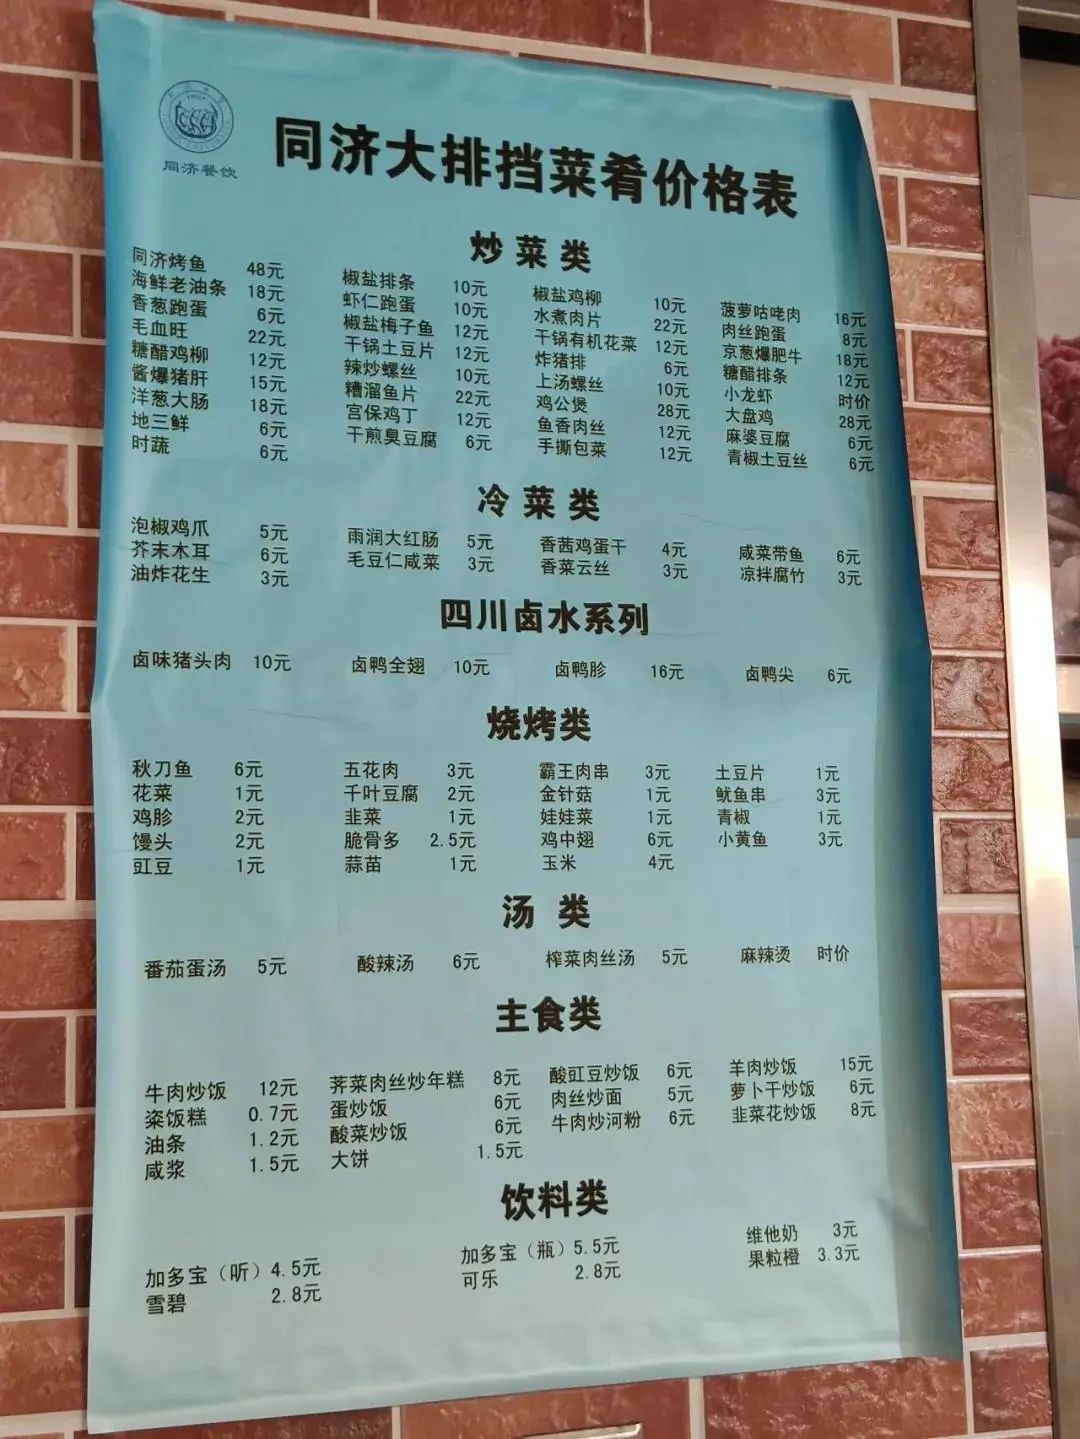 中国高校食堂 Top 7，第 3 所最好吃，但第 7 所我最想去！！